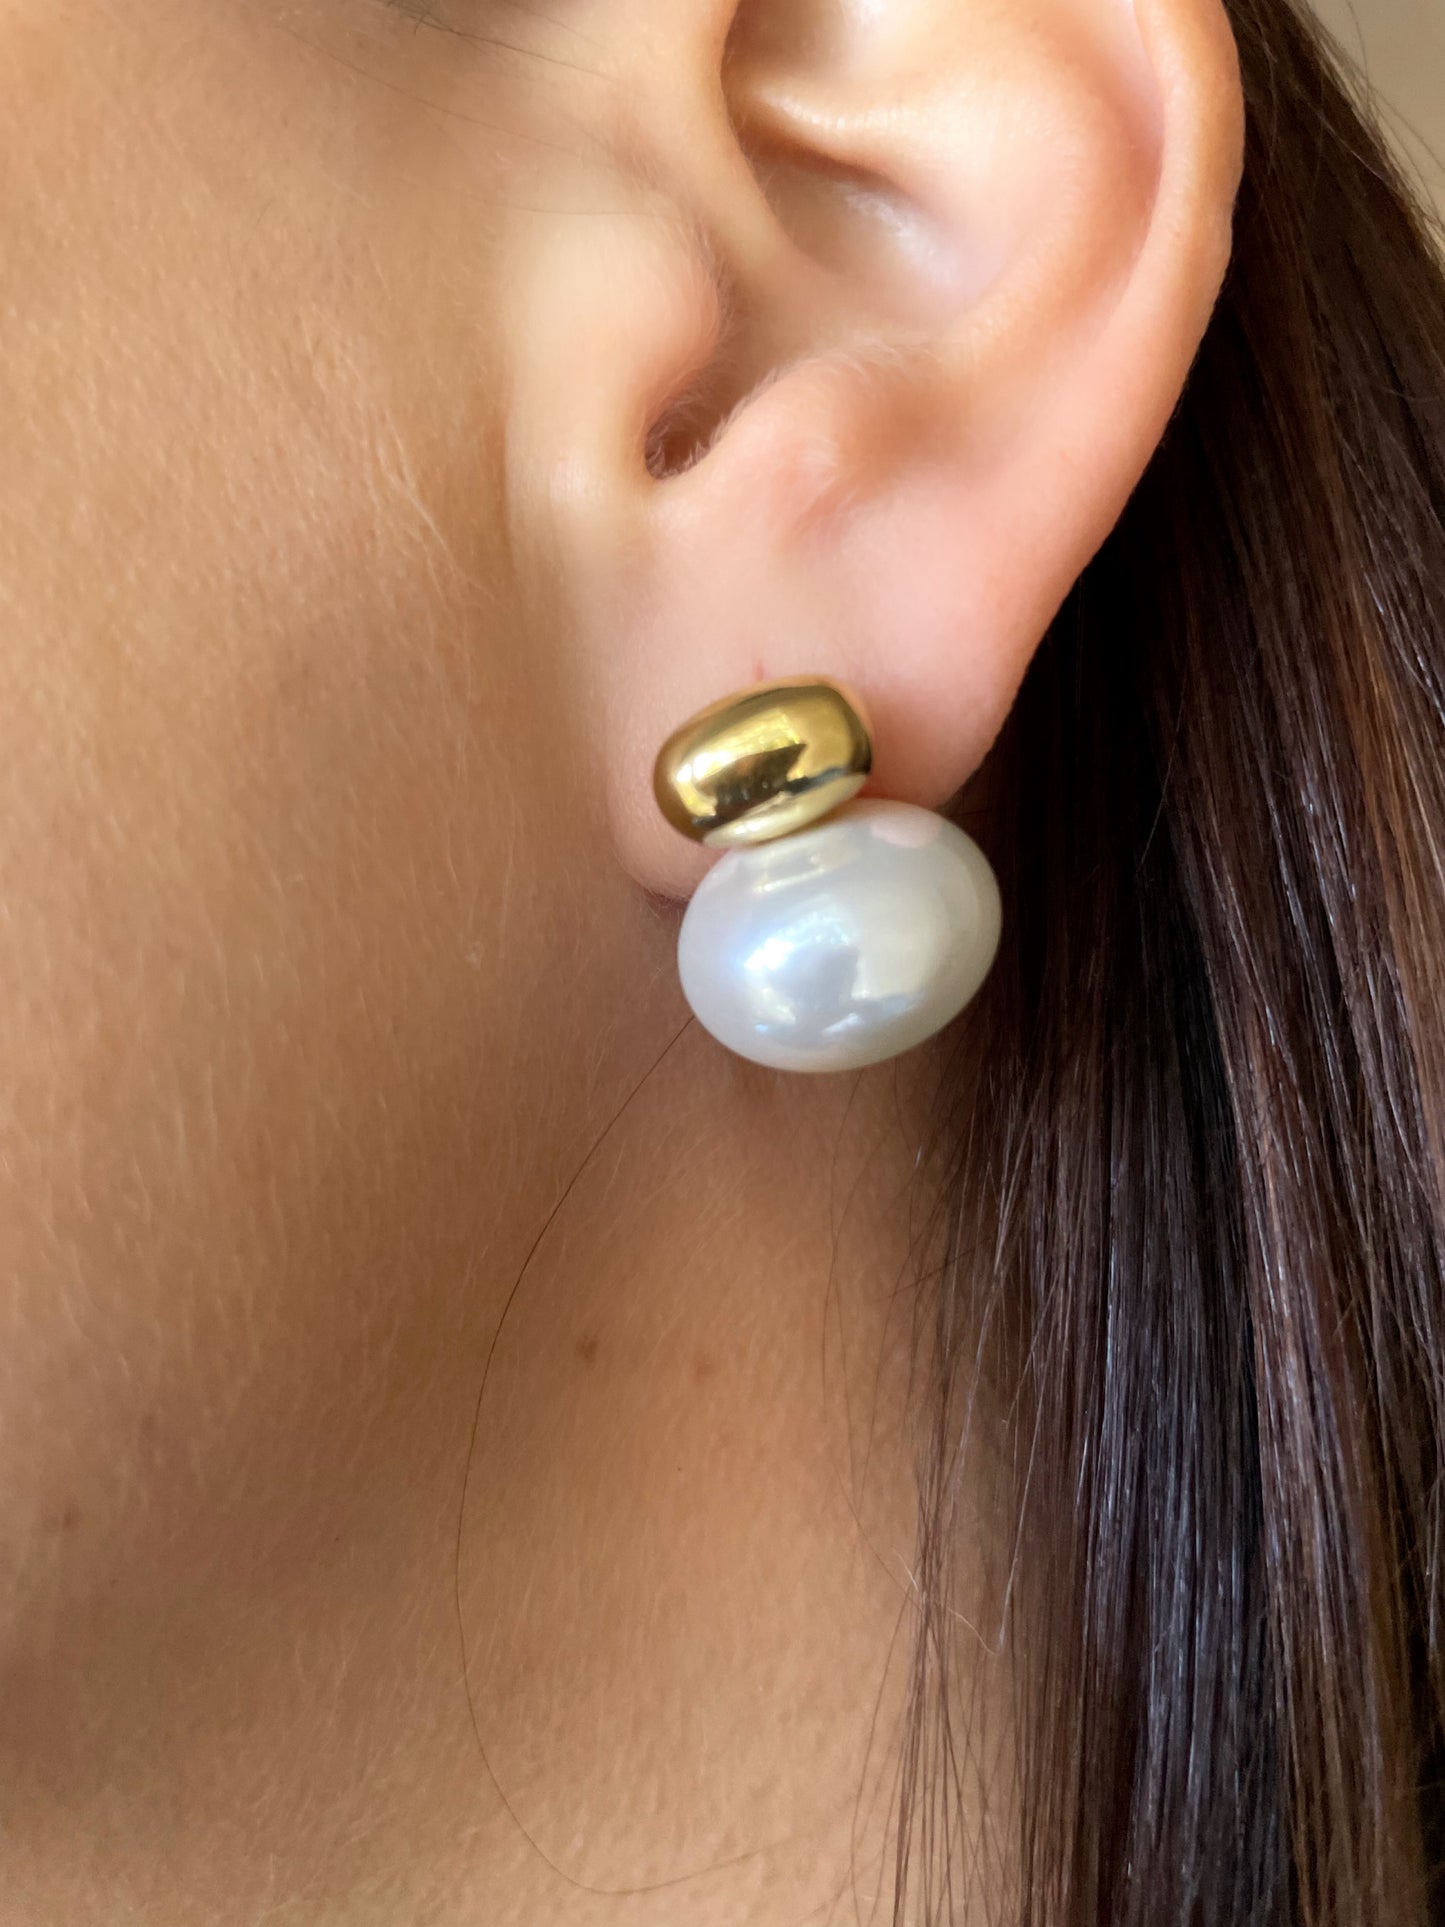 Lady earrings